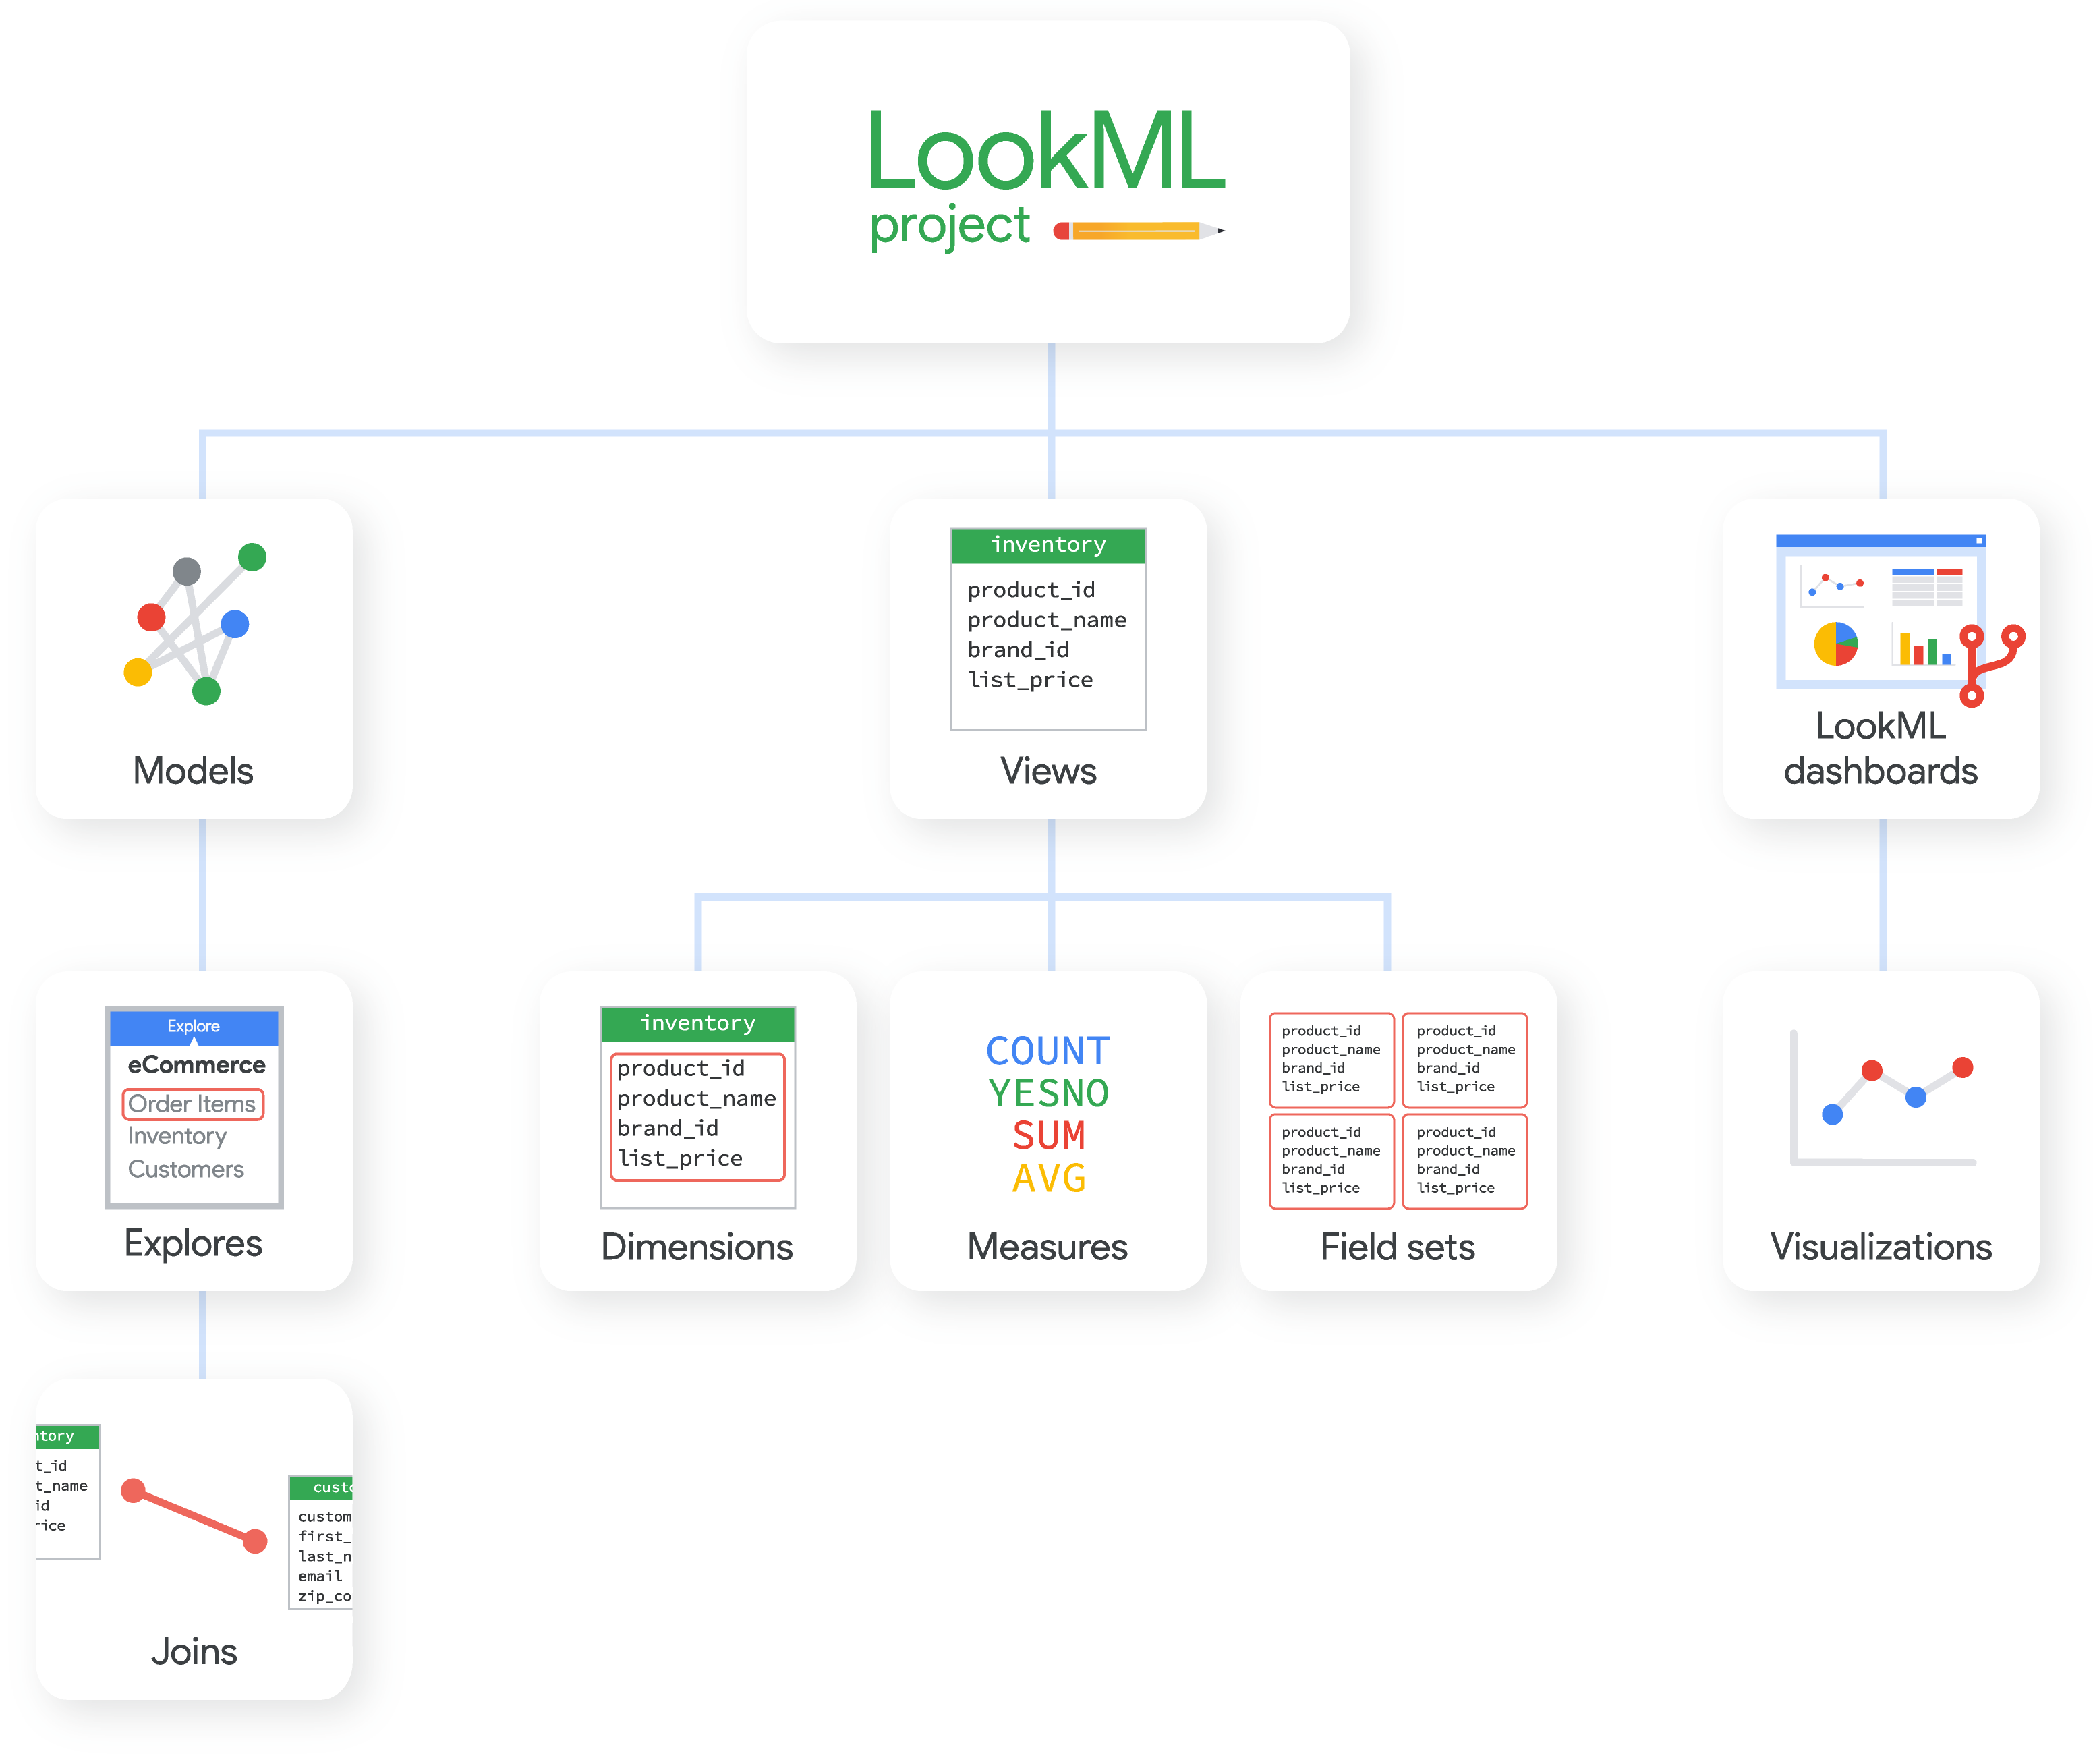 Ein LookML-Projekt kann Modelle, Ansichten und LookML-Dashboards enthalten, die jeweils aus anderen LookML-Elementen bestehen.